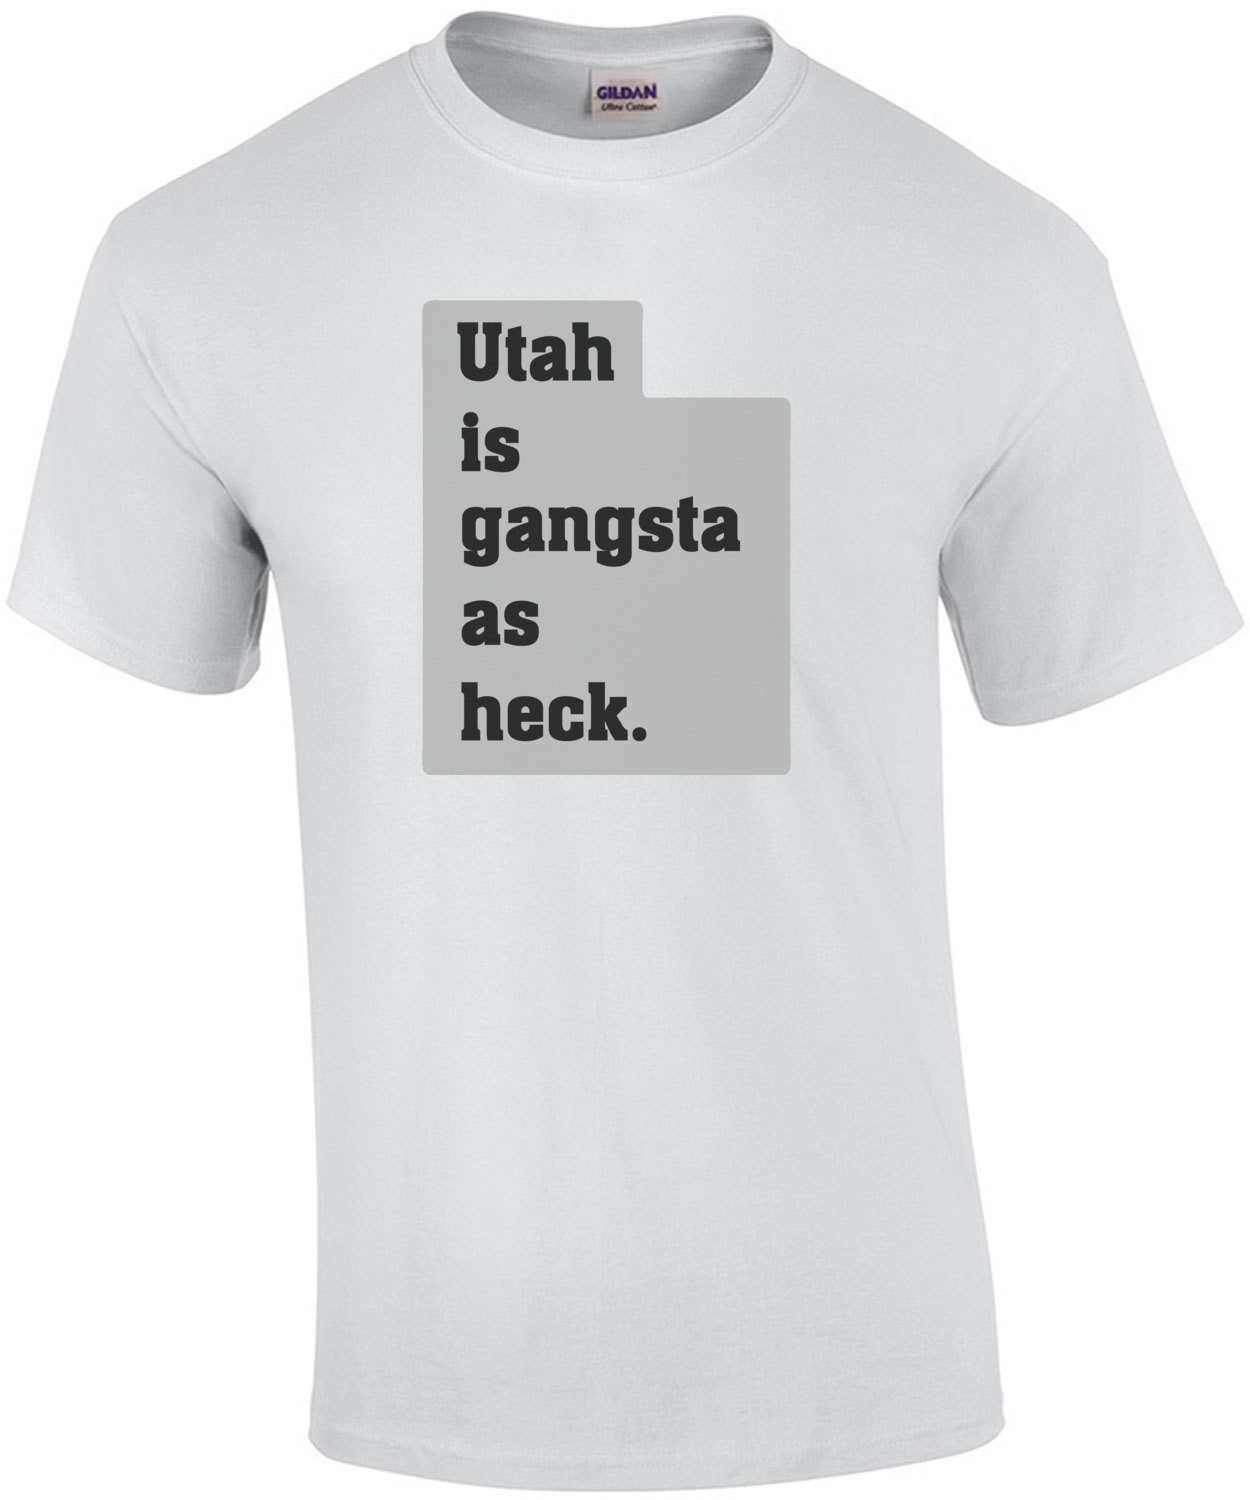 Utah is gangsta as heck. - Utah T-Shirt